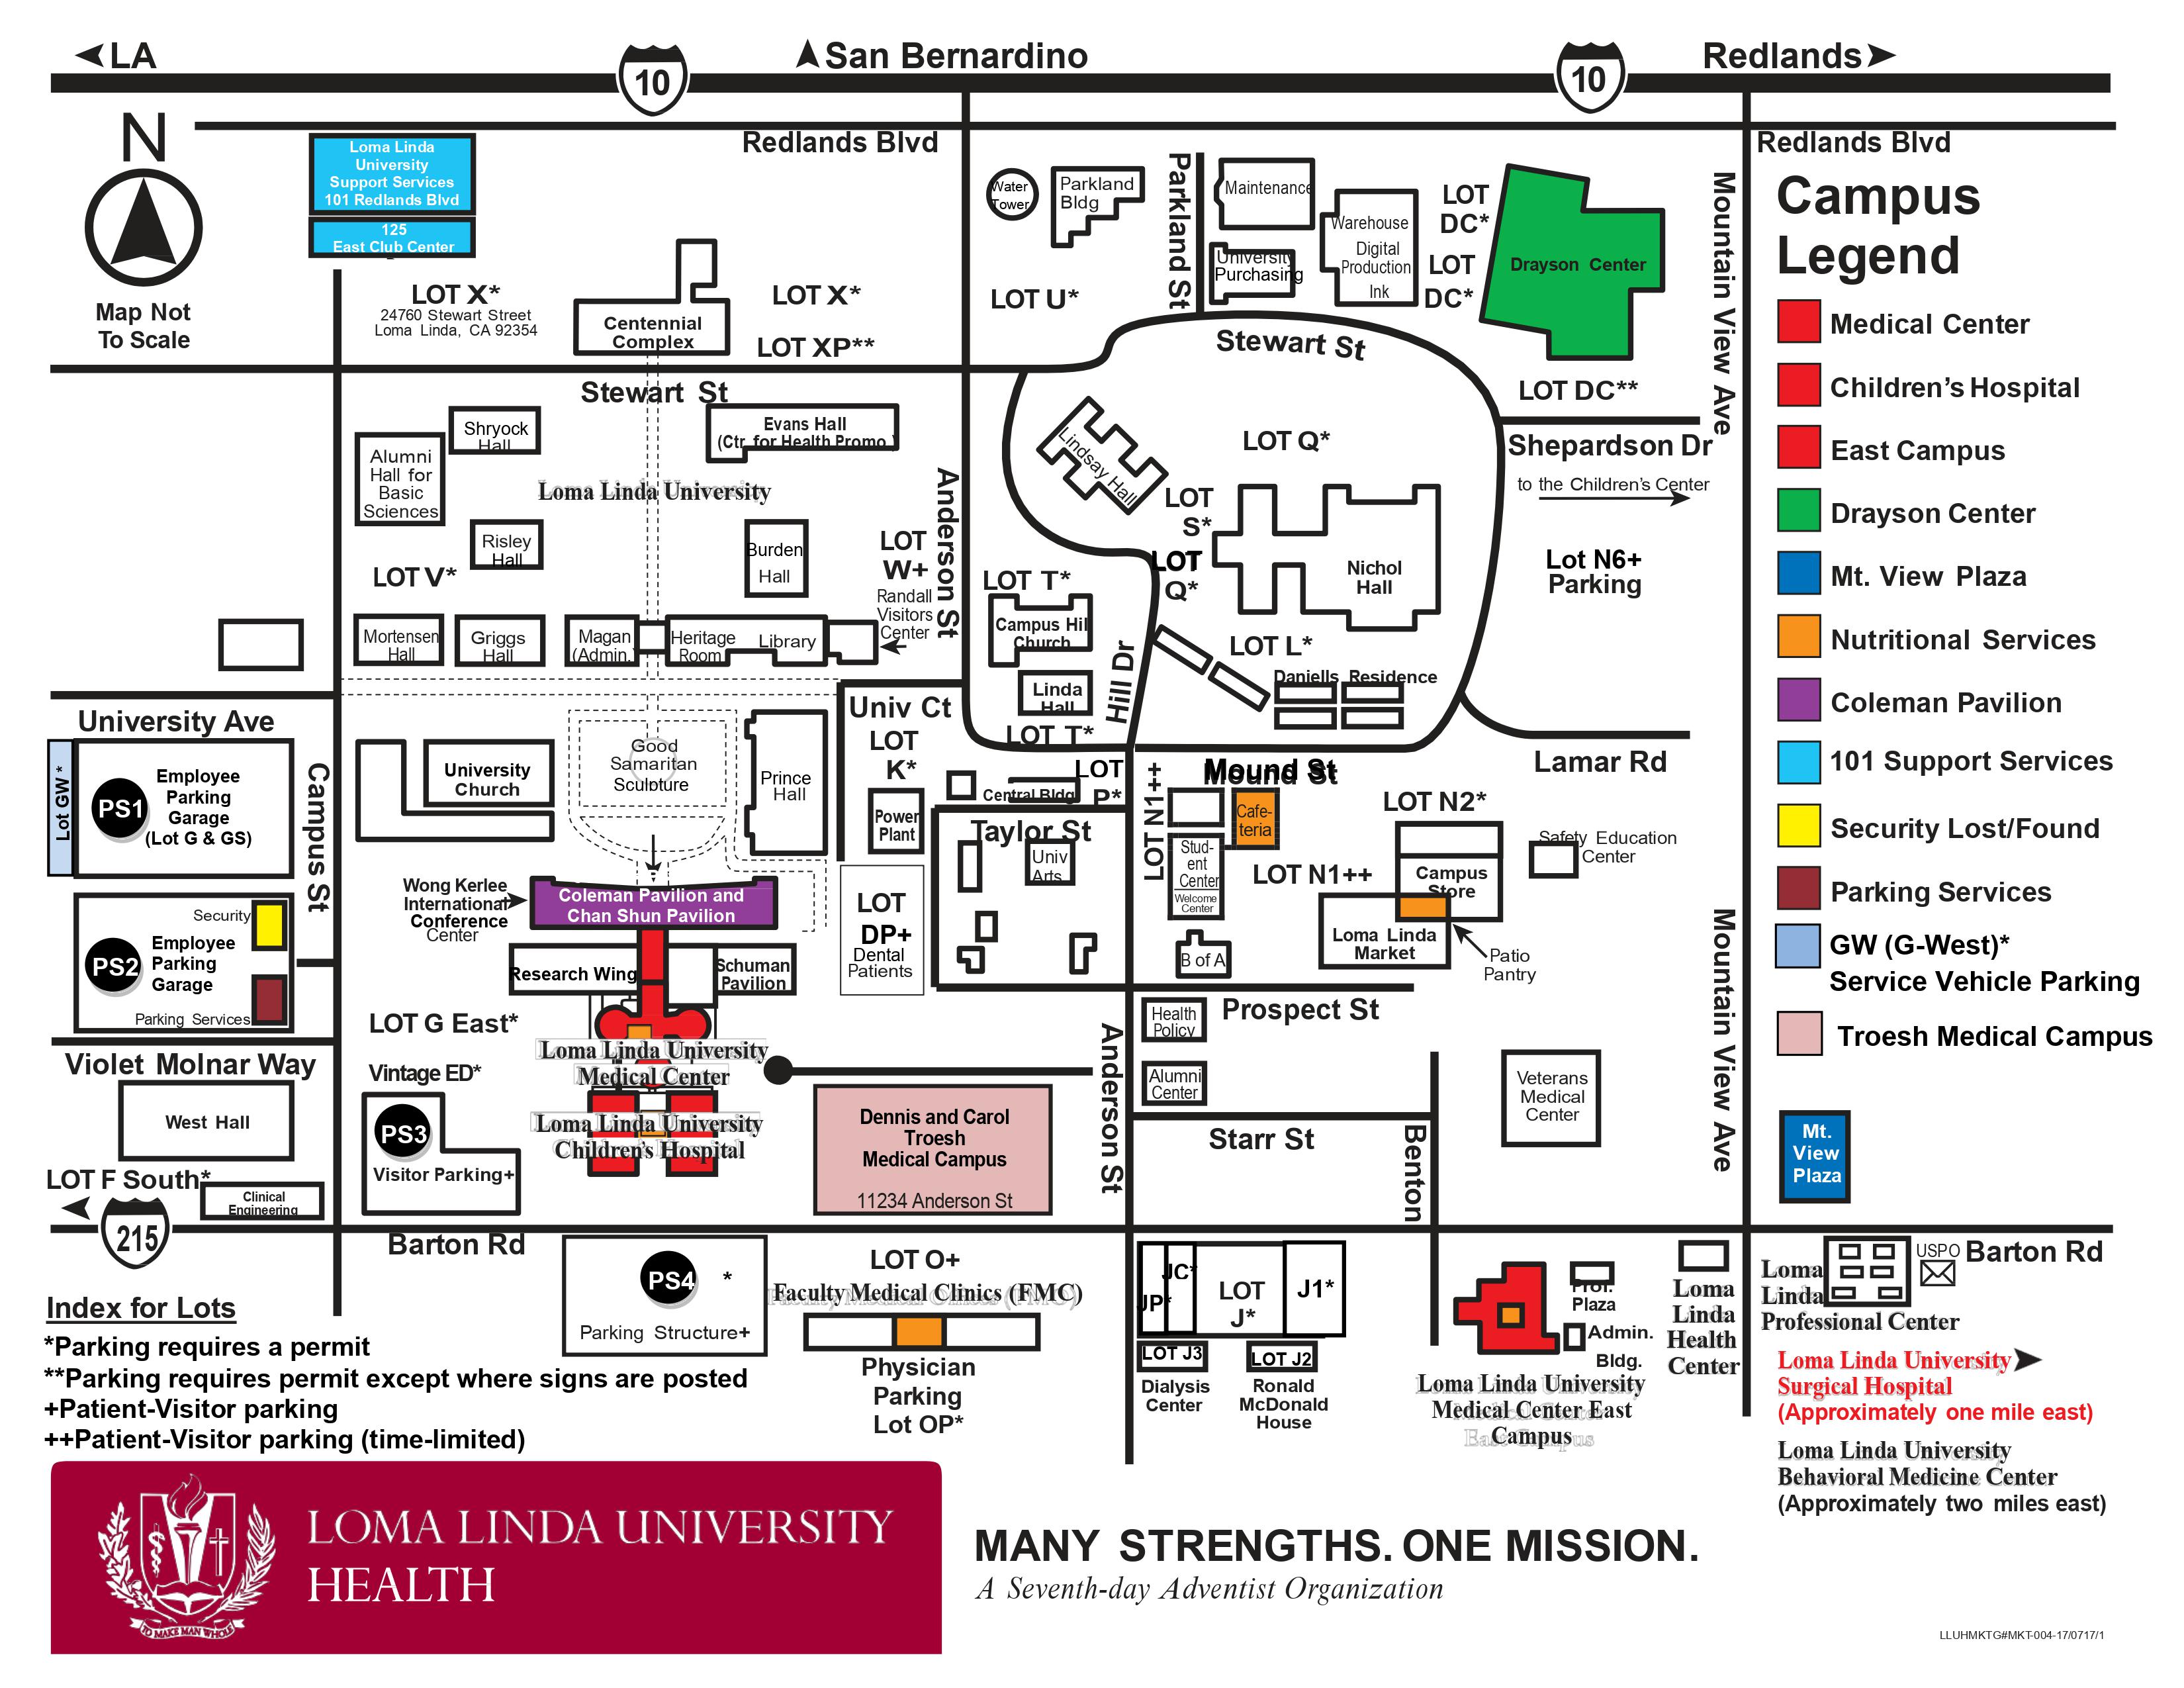 llu campus map